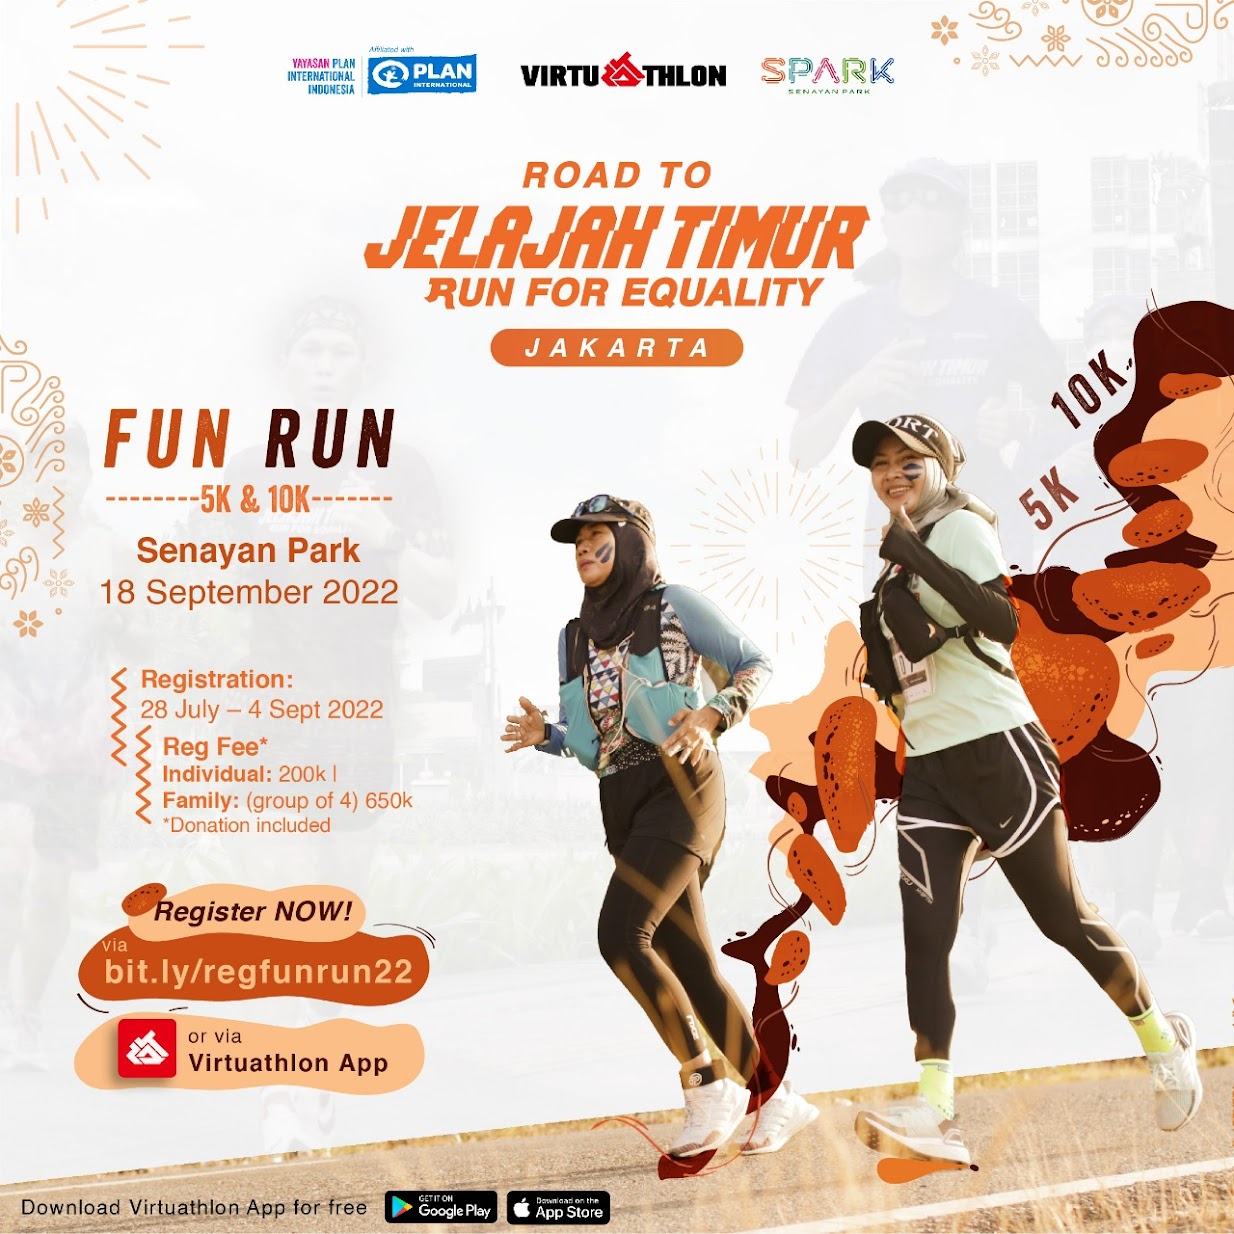 Road to Jelajah Timur - Fun Run Jakarta â€¢ 2022